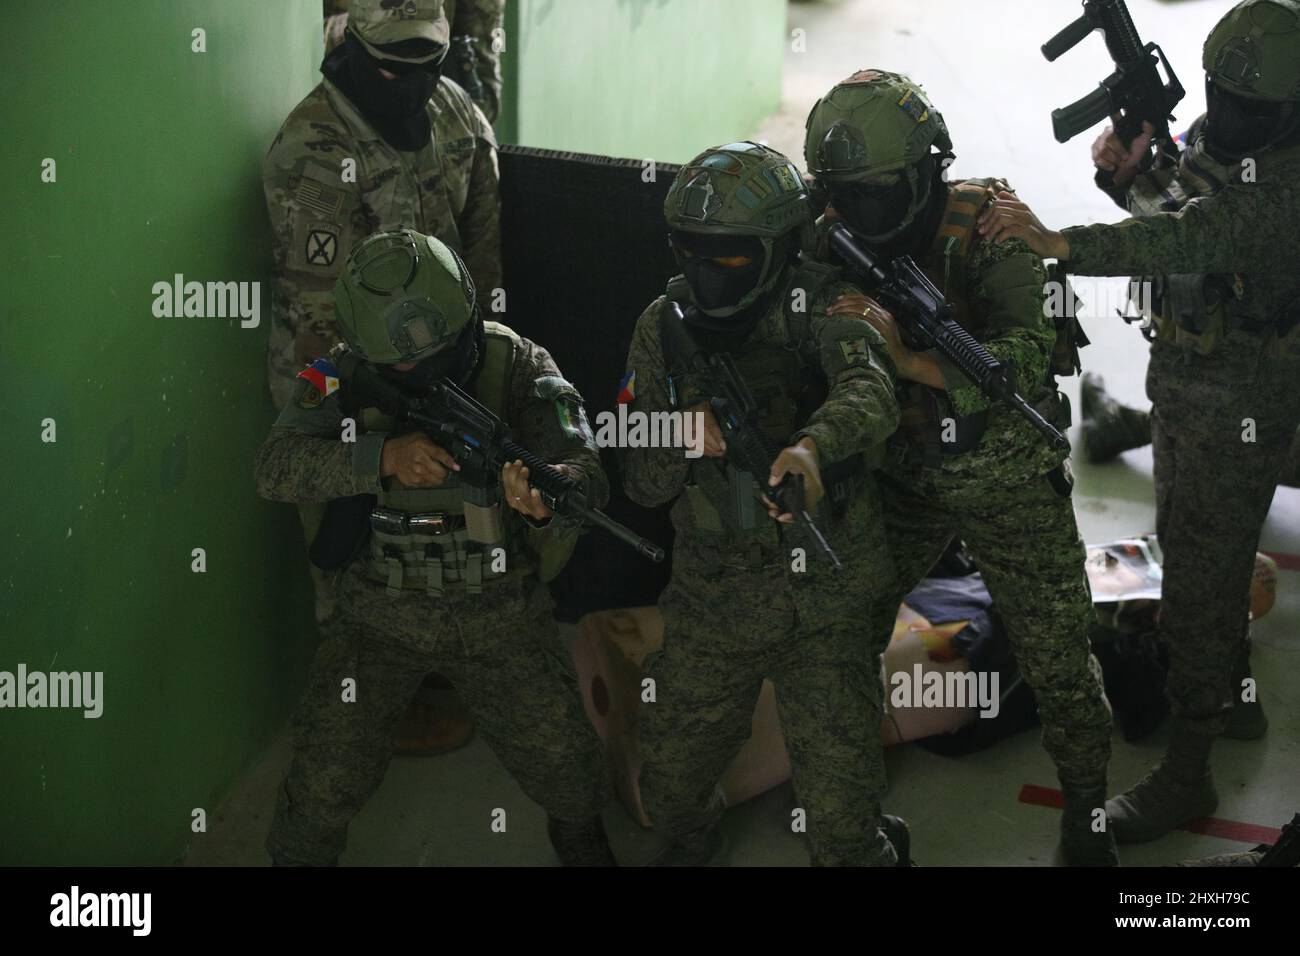 Des soldats de l'armée philippine affectés à 1st Brigade combat Team Clear rooms en tant qu'observateur d'entraînement de l'armée américaine de la Compagnie C, 2nd Bataillon, 27th Infantry Regiment, 3rd Infantry Brigade combat Team, 25th Infantry Division, regarde pendant un exercice d'entraînement en terrain urbain à l'appui de Salaknib à fort Magsaysay, Nueva Ecija, Philippines, le 11 mars 2022. Salaknib est un exercice bilatéral annuel mené par l'armée philippine et parrainé par l'armée américaine du Pacifique, conçu pour améliorer la capacité et l'interopérabilité de l'armée américaine et philippine dans toute la gamme des opérations militaires, tout en renforçant les liens entre les deux Banque D'Images